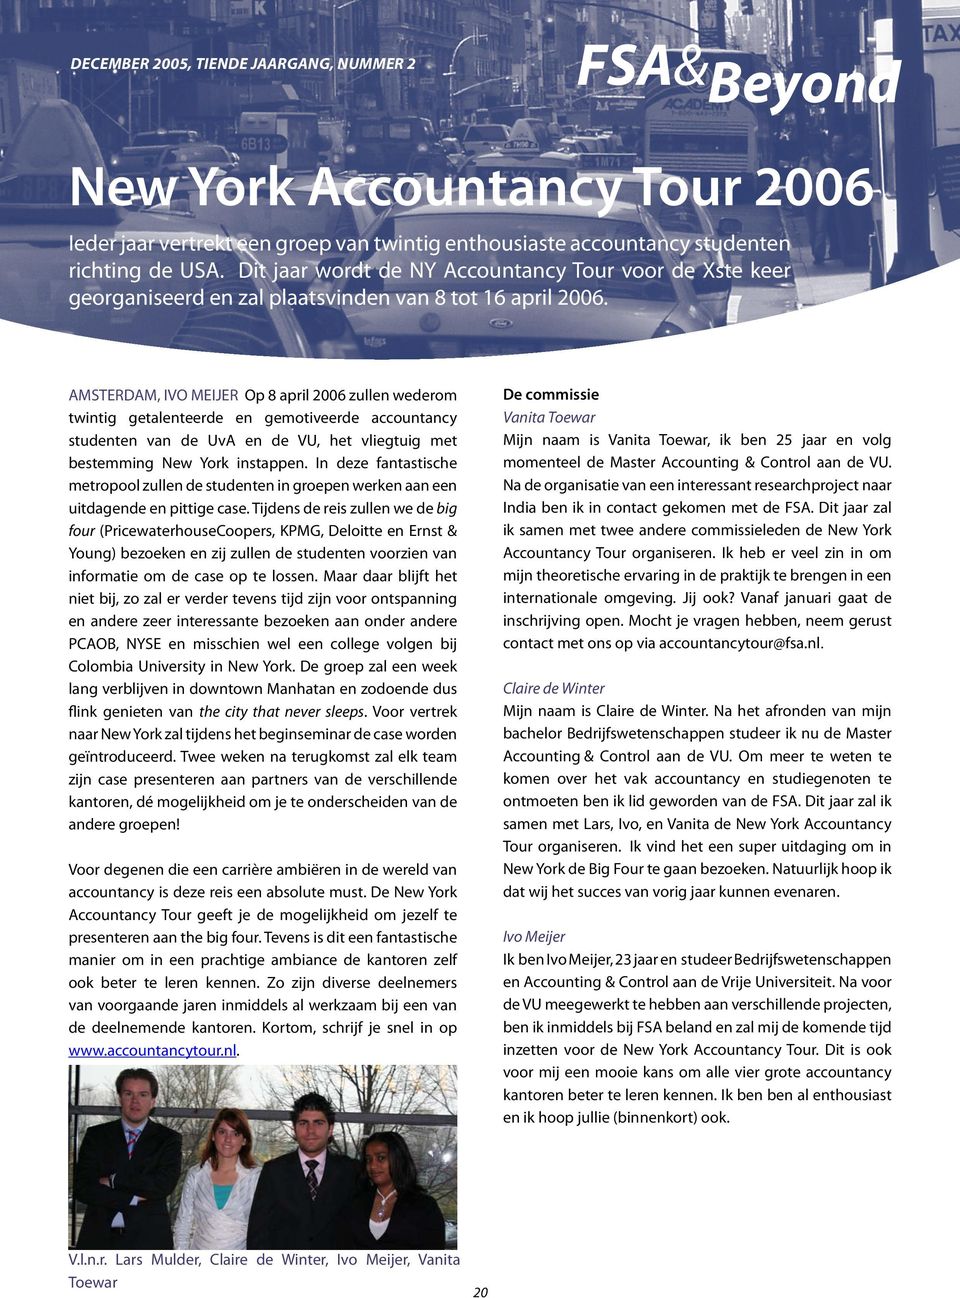 AMSTERDAM, IVO MEIJER Op 8 april 2006 zullen wederom twintig getalenteerde en gemotiveerde accountancy studenten van de UvA en de VU, het vliegtuig met bestemming New York instappen.